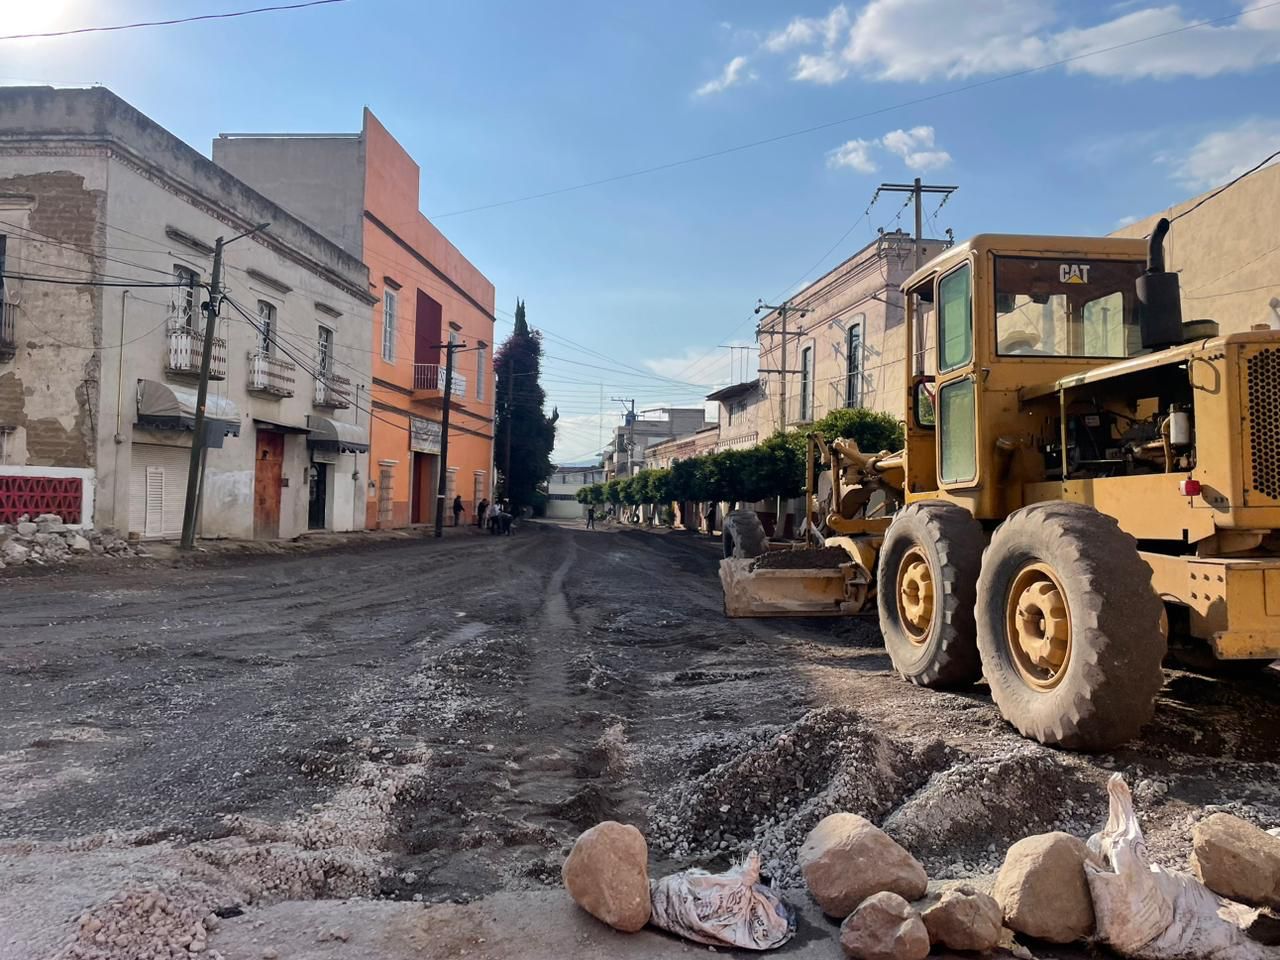 Avanza rehabilitación de calle Bernardo Picazo en Chiautempan